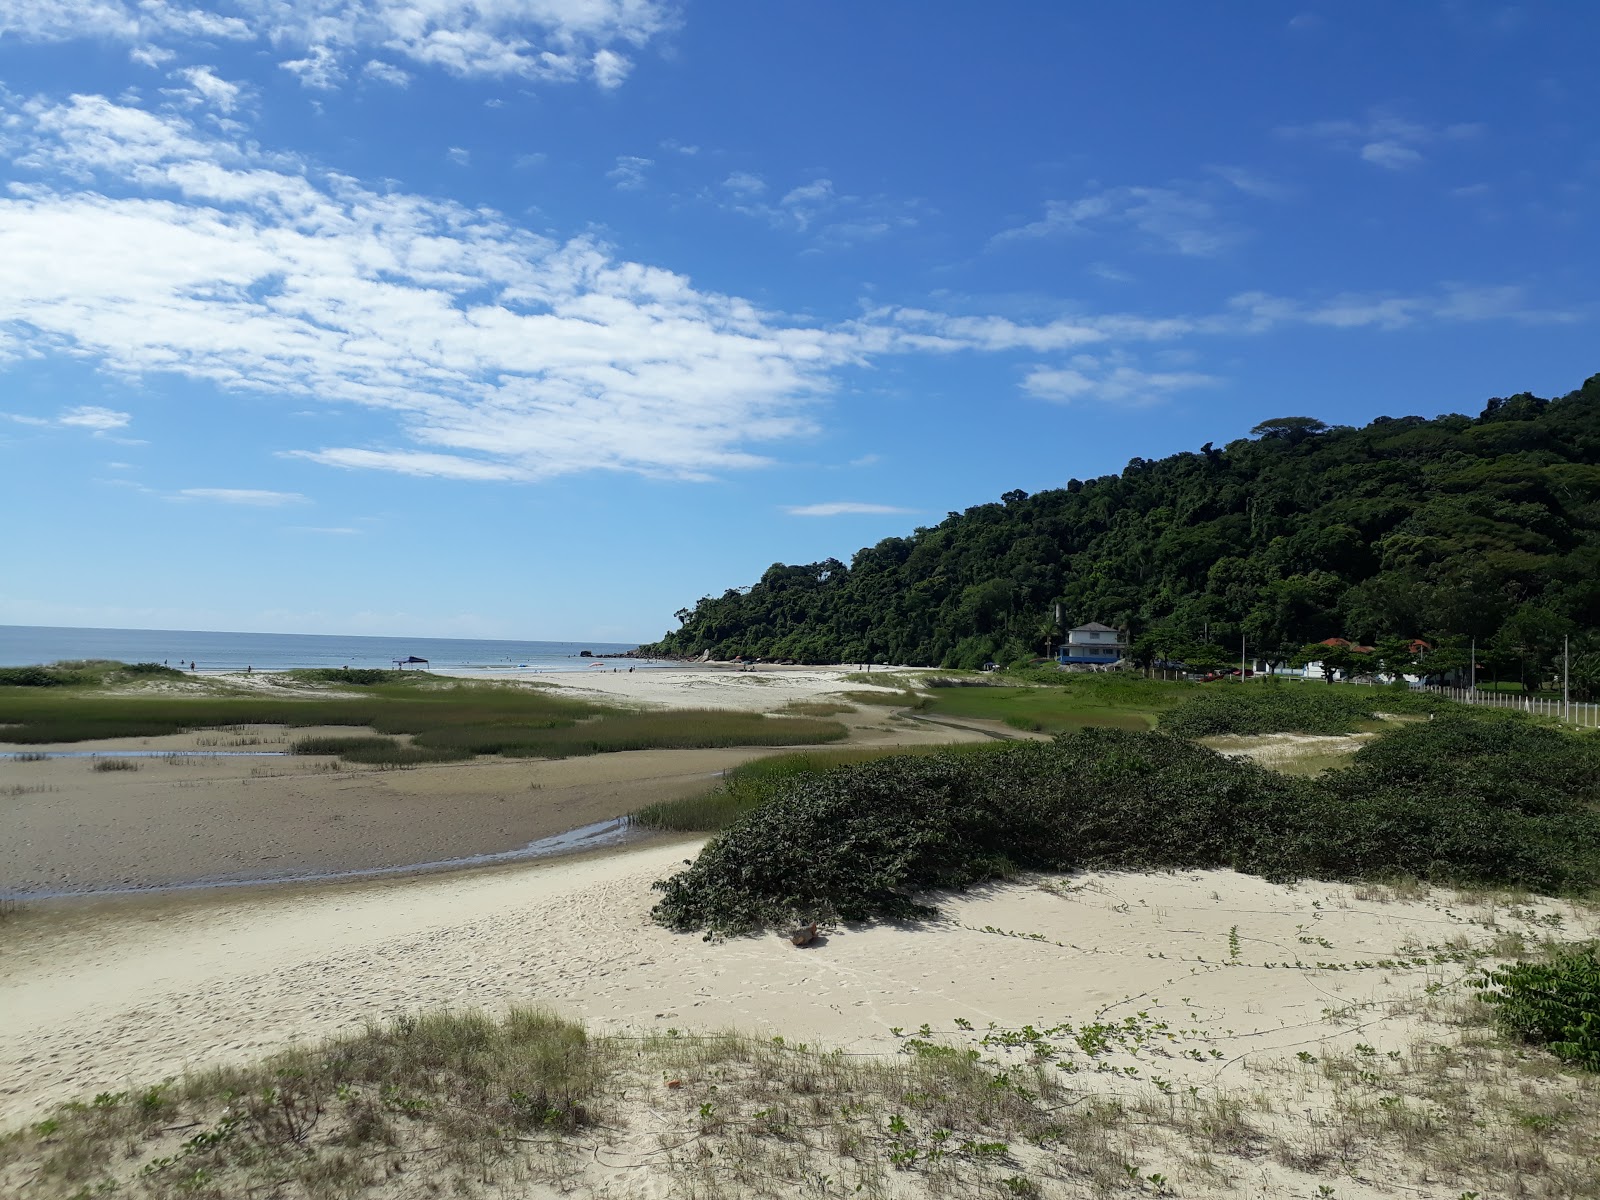 Zdjęcie Plaża Forte - popularne miejsce wśród znawców relaksu